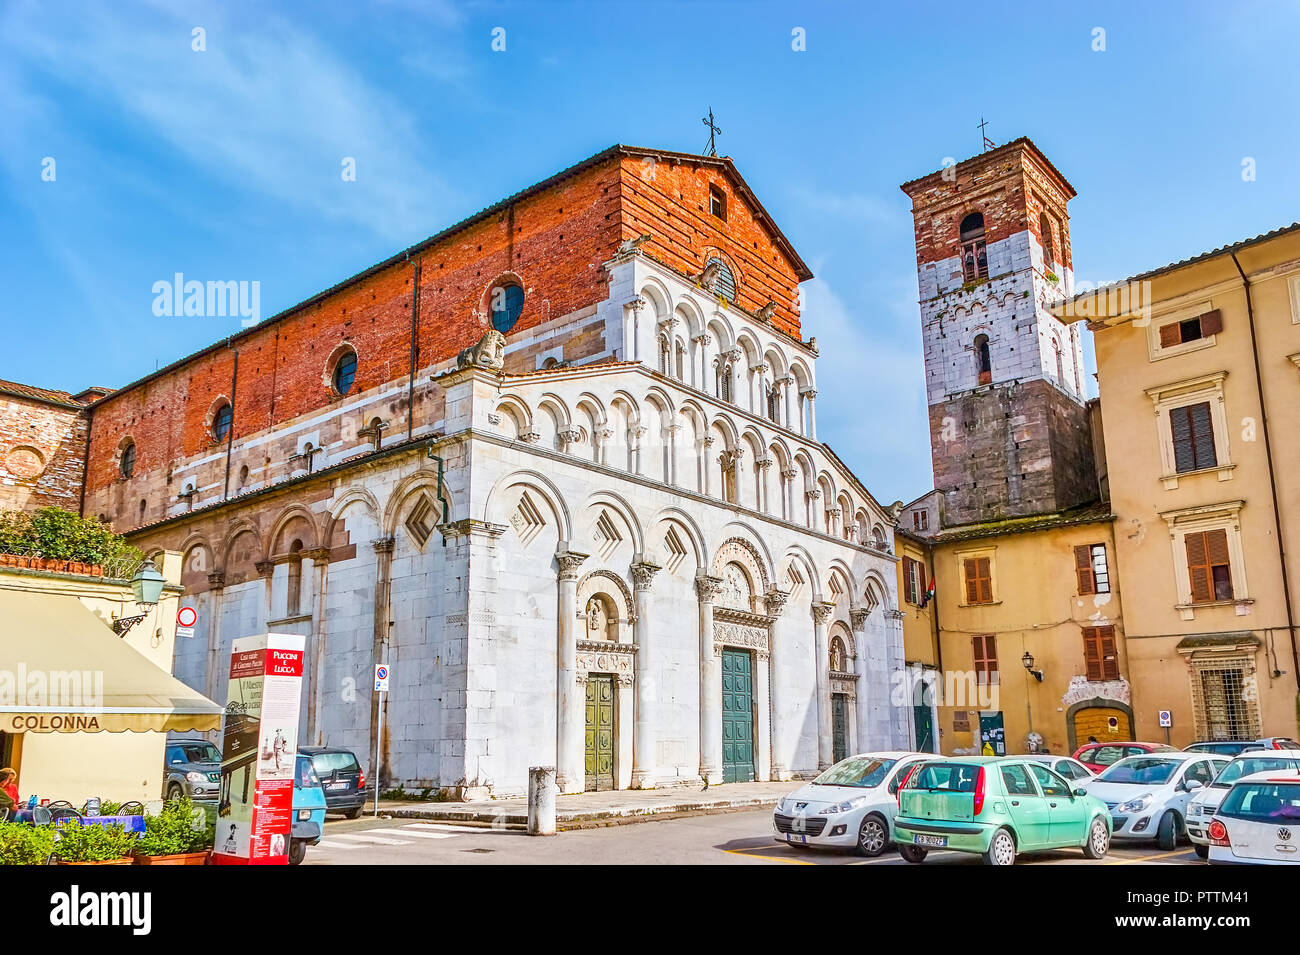 LUCCA, ITALIE - 30 avril 2013 : l'Église médiévale Santa Maria Forisportam incomplète avec façade en marbre et petit clocher sur le voisin buildi Banque D'Images